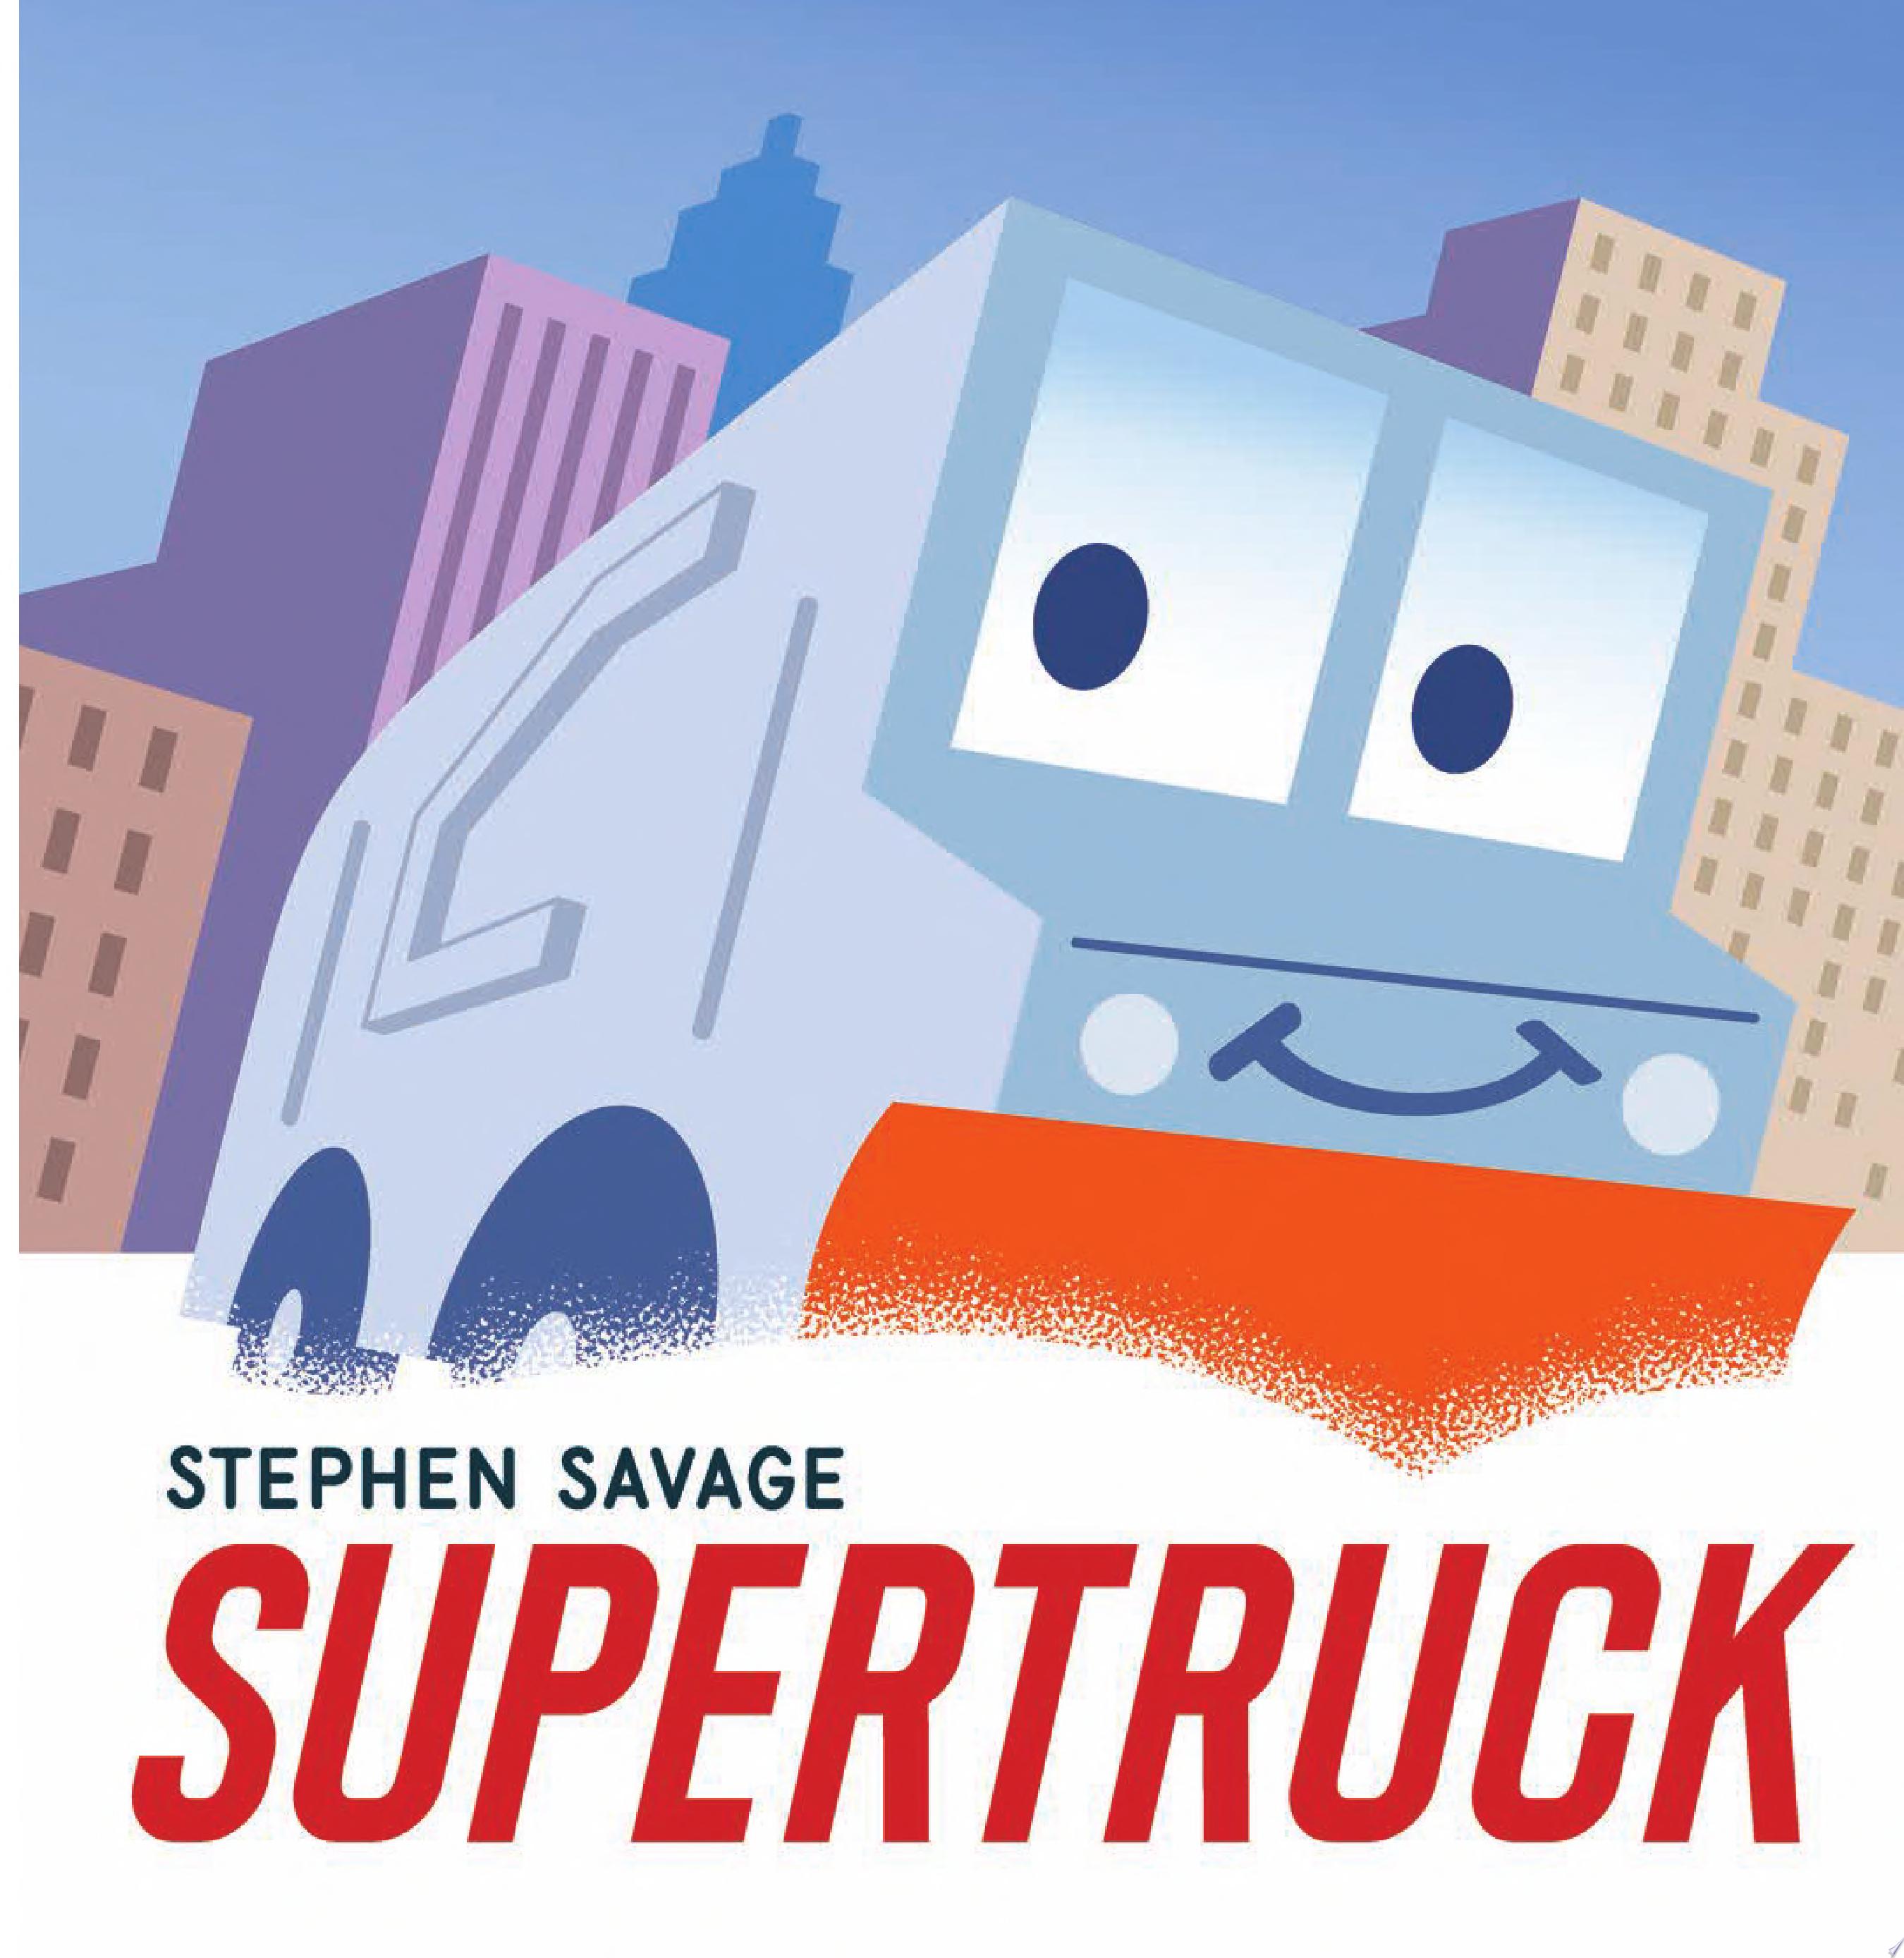 Image for "Supertruck"